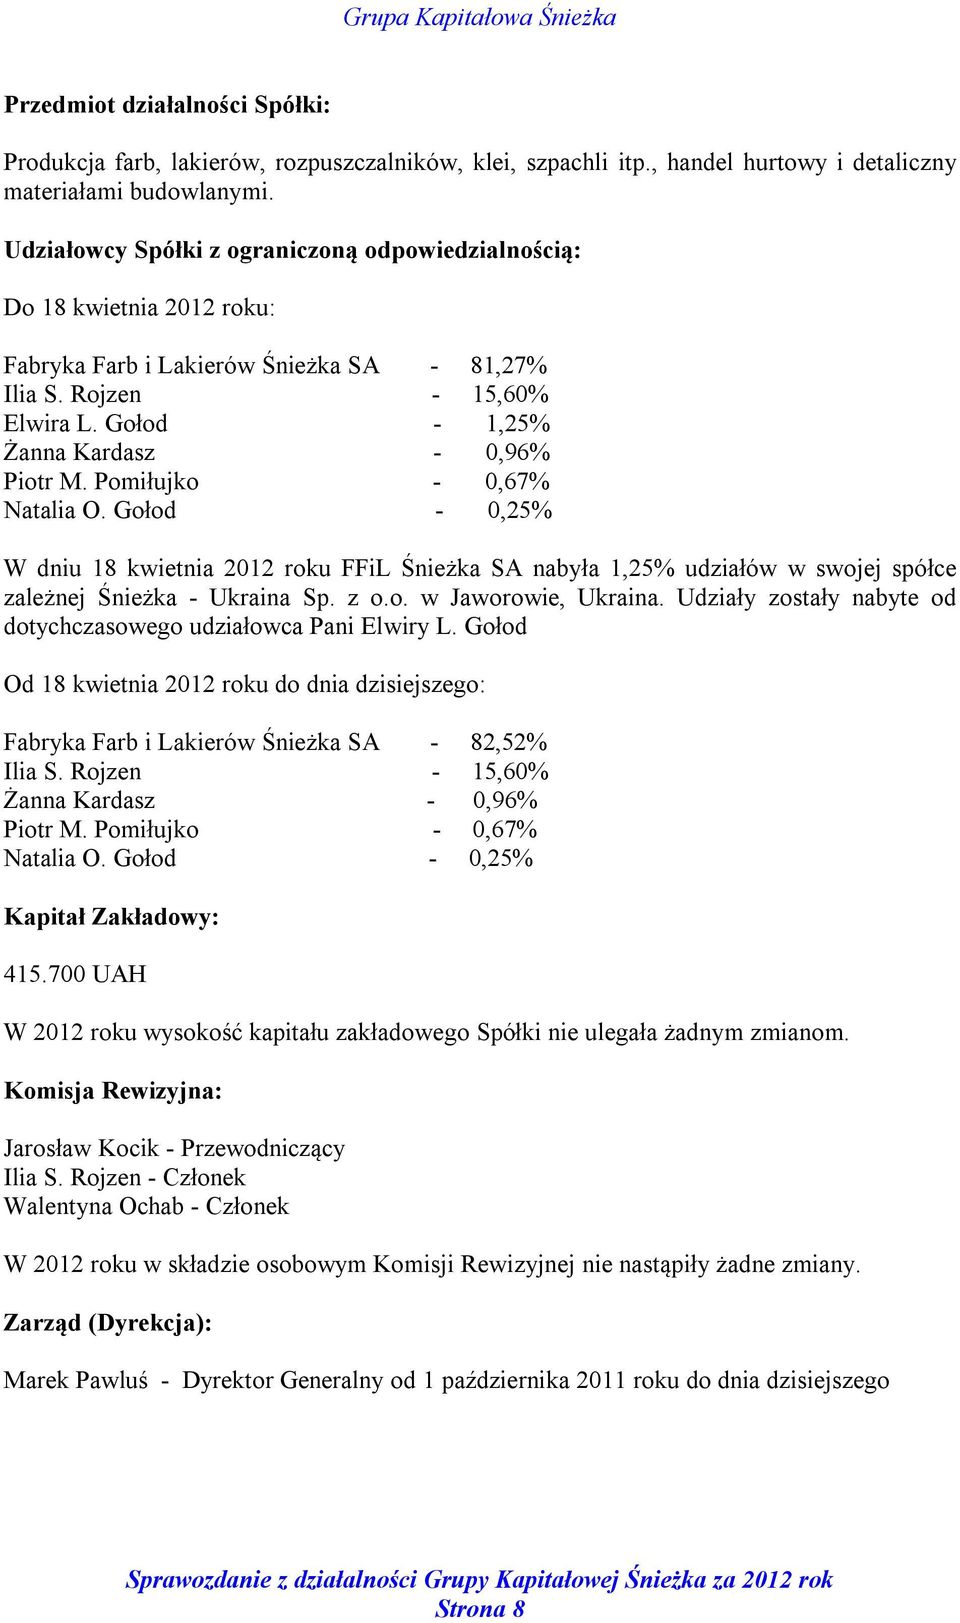 Pomiłujko - 0,67% Natalia O. Gołod - 0,25% W dniu 18 kwietnia 2012 roku FFiL Śnieżka SA nabyła 1,25% udziałów w swojej spółce zależnej Śnieżka - Ukraina Sp. z o.o. w Jaworowie, Ukraina.